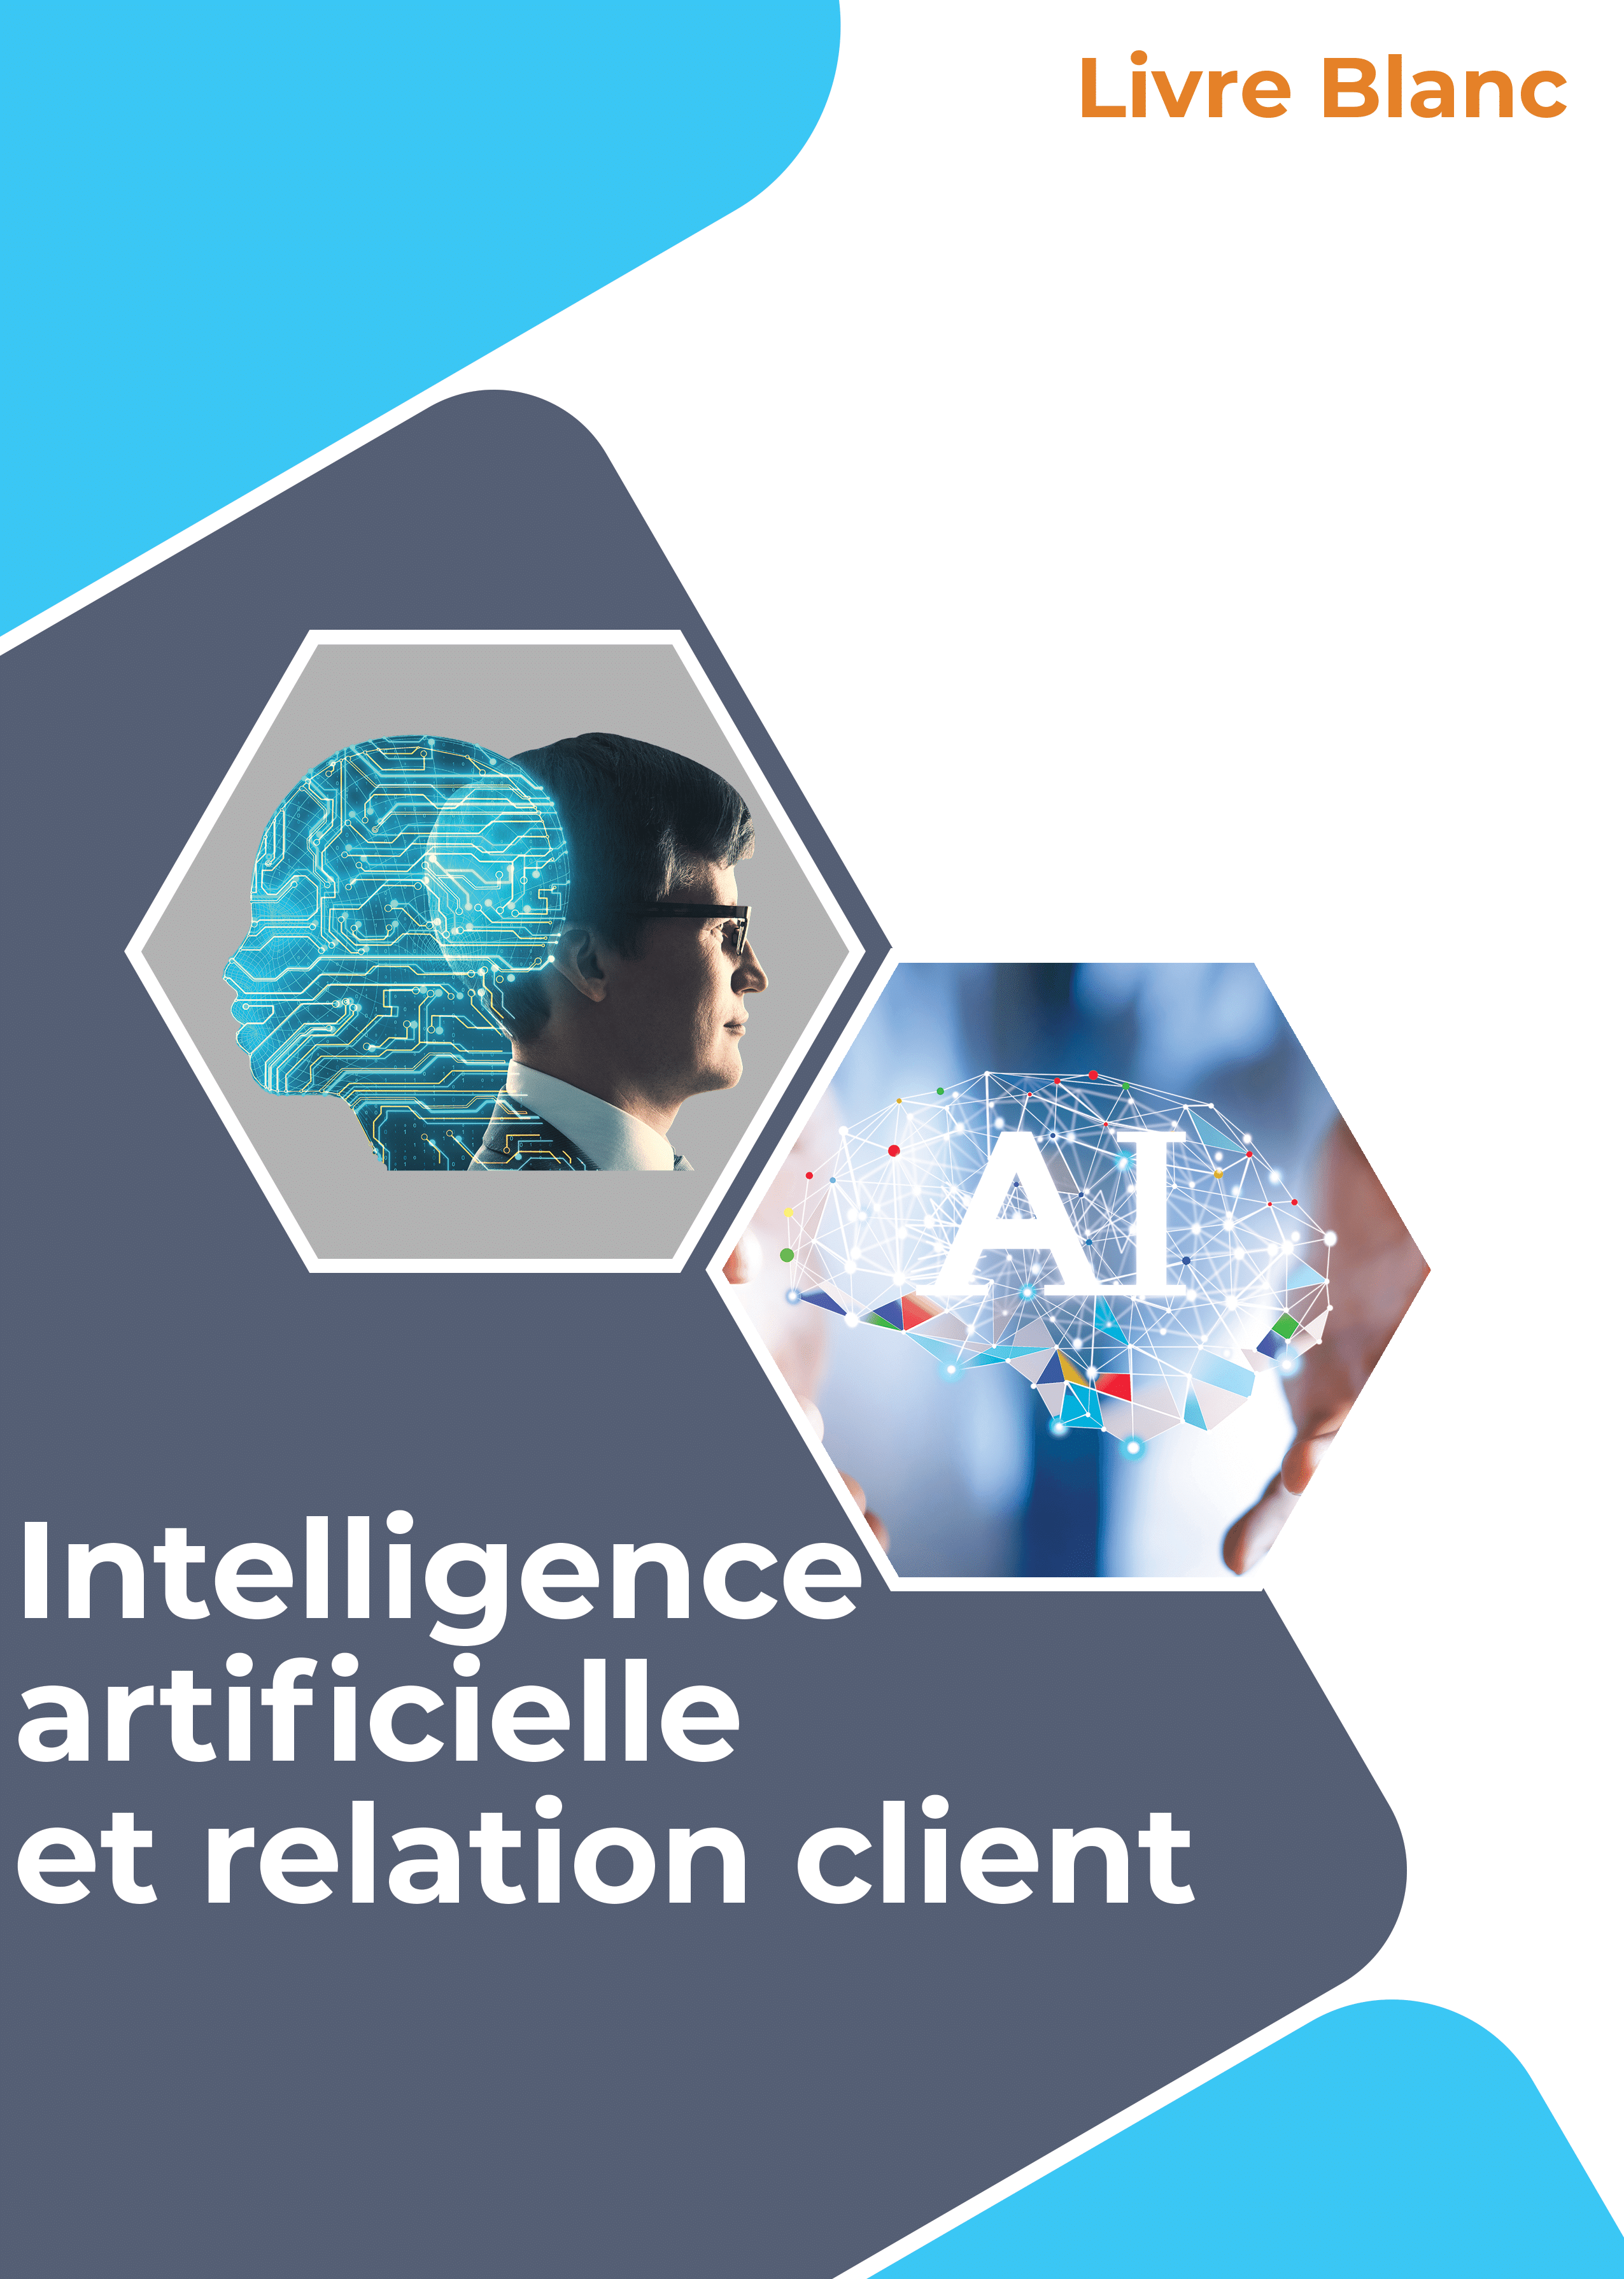 Intelligence artificielle (IA) et relation client dans un service client